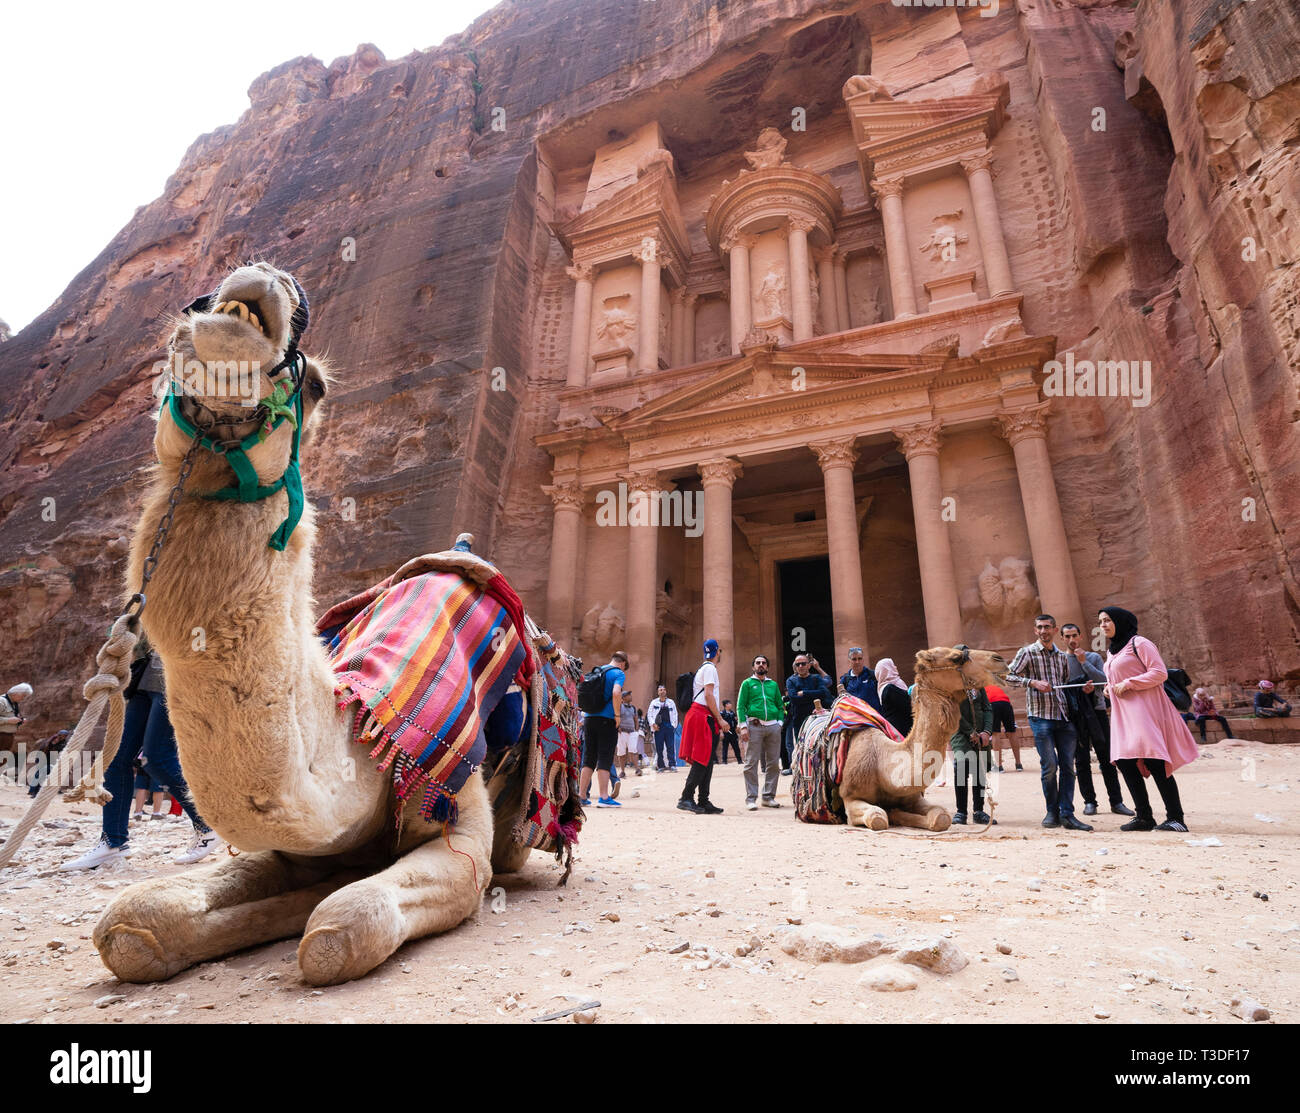 Les chameaux pour attendre les clients touristiques auprès du Trésor (Al khazneh), à Petra, Jordanie, Site du patrimoine mondial de l'UNESCO Banque D'Images